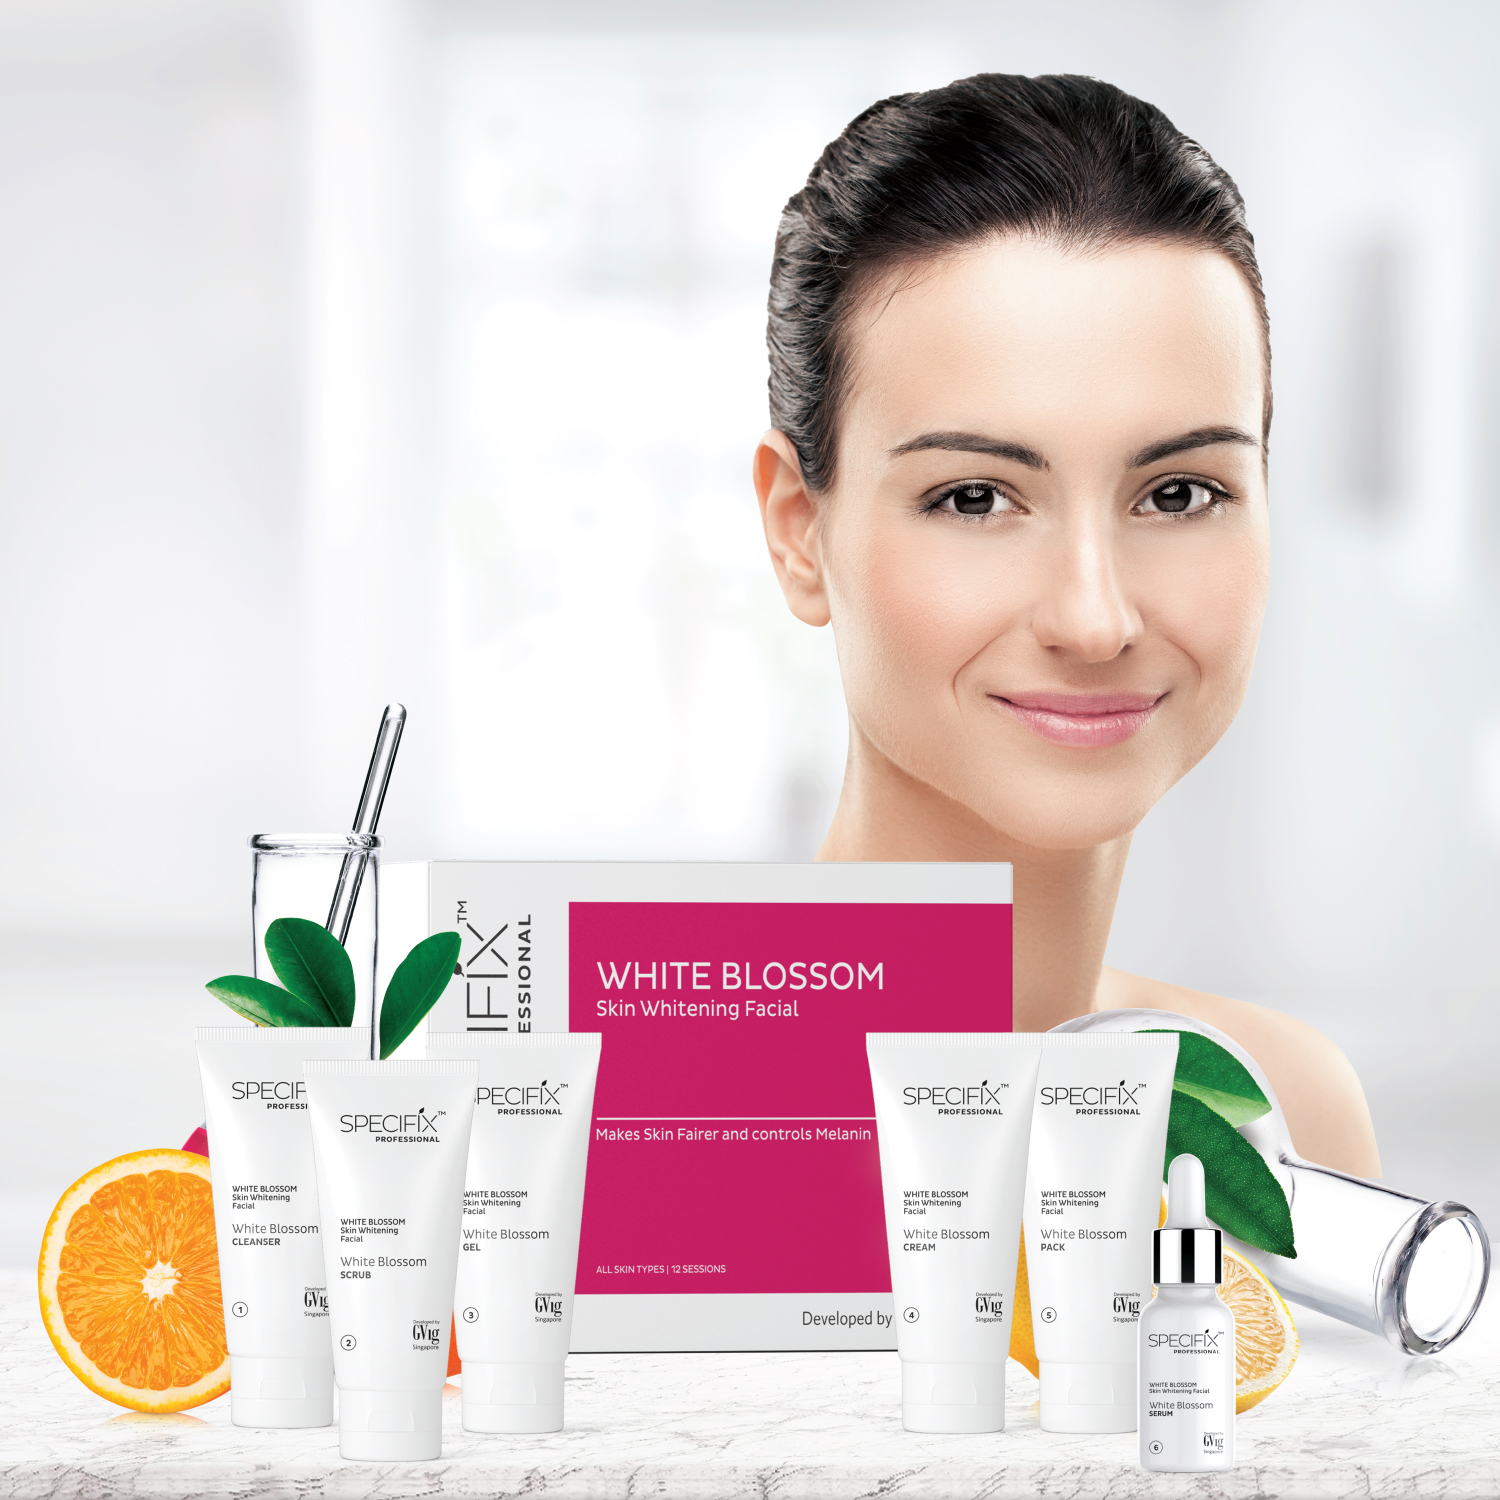 Advanced Skin Illuminating Treatment: SPECIFIX™ White Blossom Skin Whitening Facial